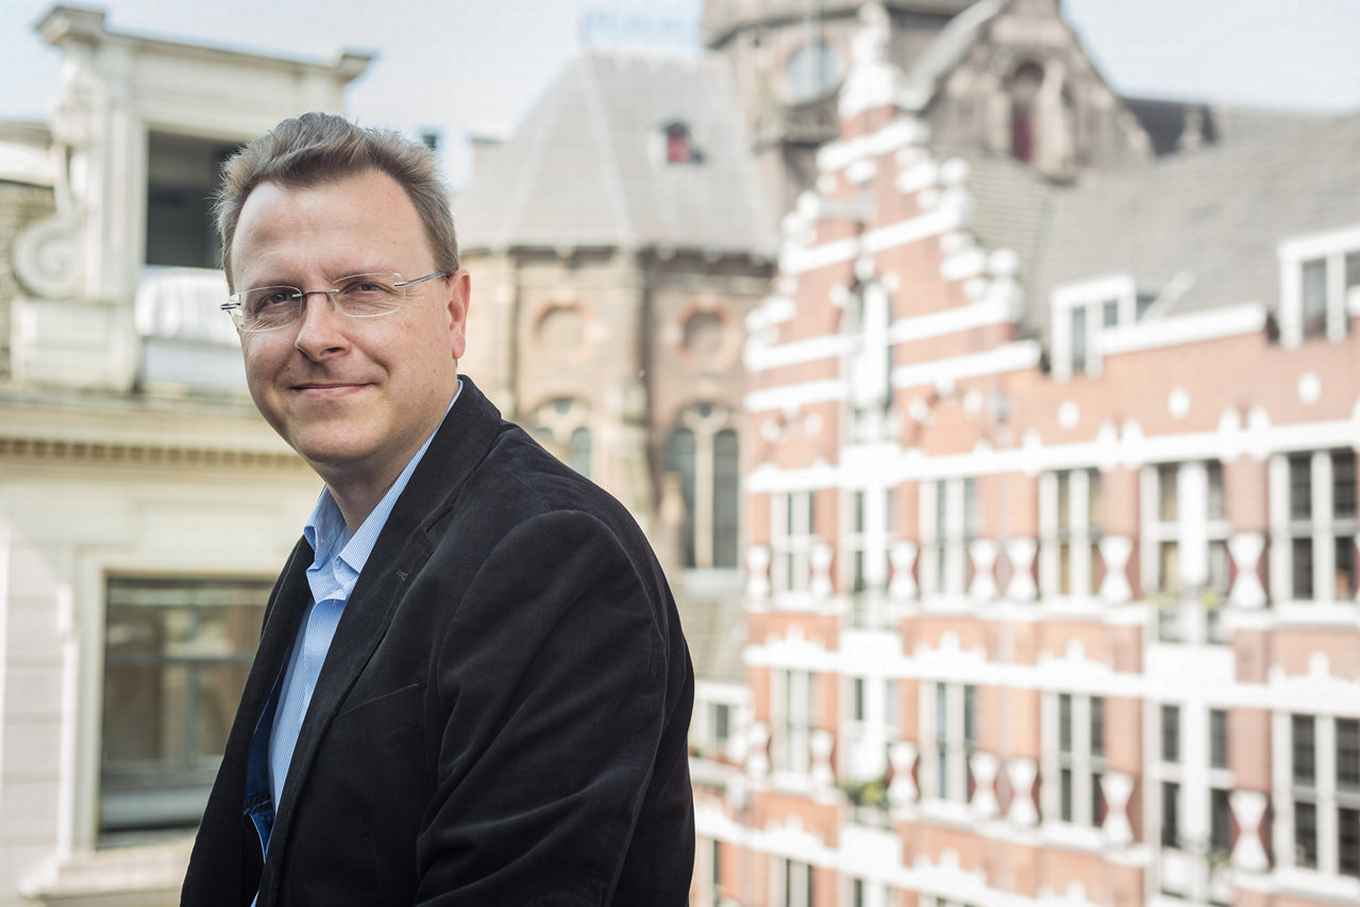 dhr. prof. dr. Gabri Tussenbroek, hoogleraar FGw, Stedelijke identiteit en monumenten, in het bijzonder van de stad Amsterdam